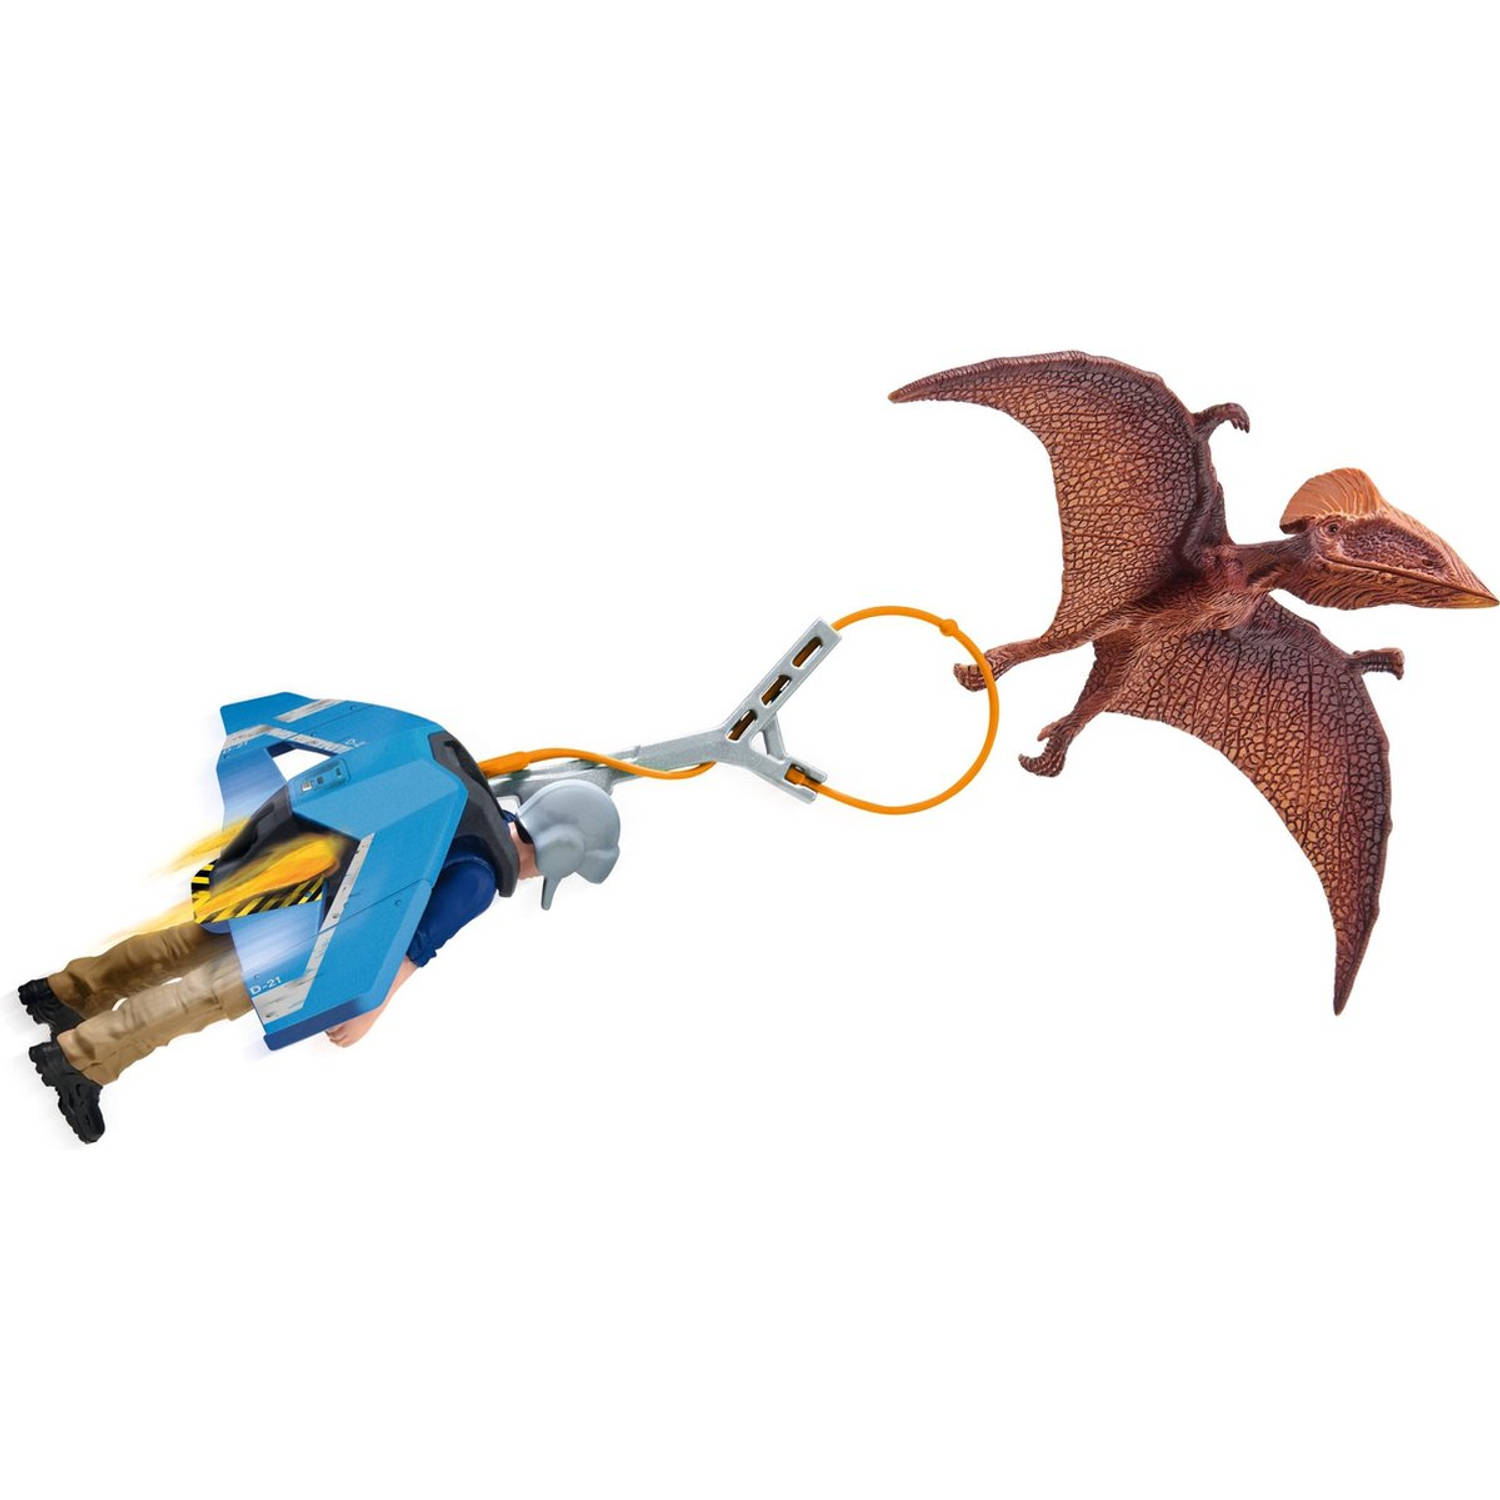 Schleich® Speelfiguur Dinosaurs, Jetpack vervolging (41467) met bijzondere pterosaurus